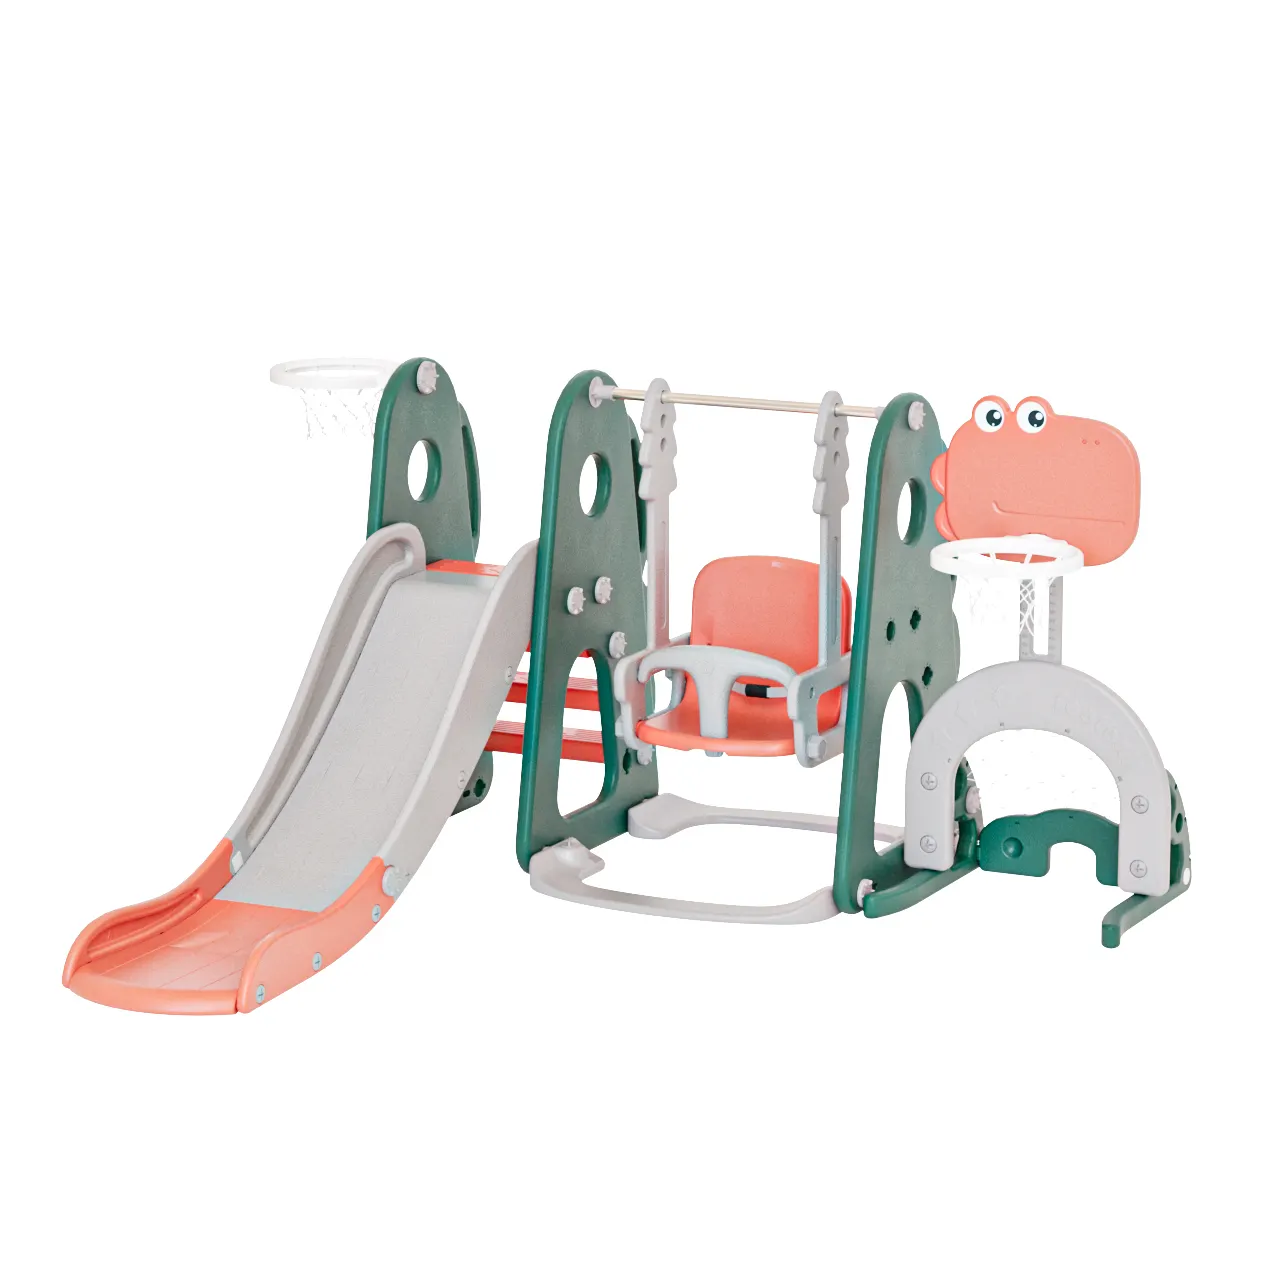 Swing Kids Slide Plastic Indoor For Children ,Kids Indoor Slide